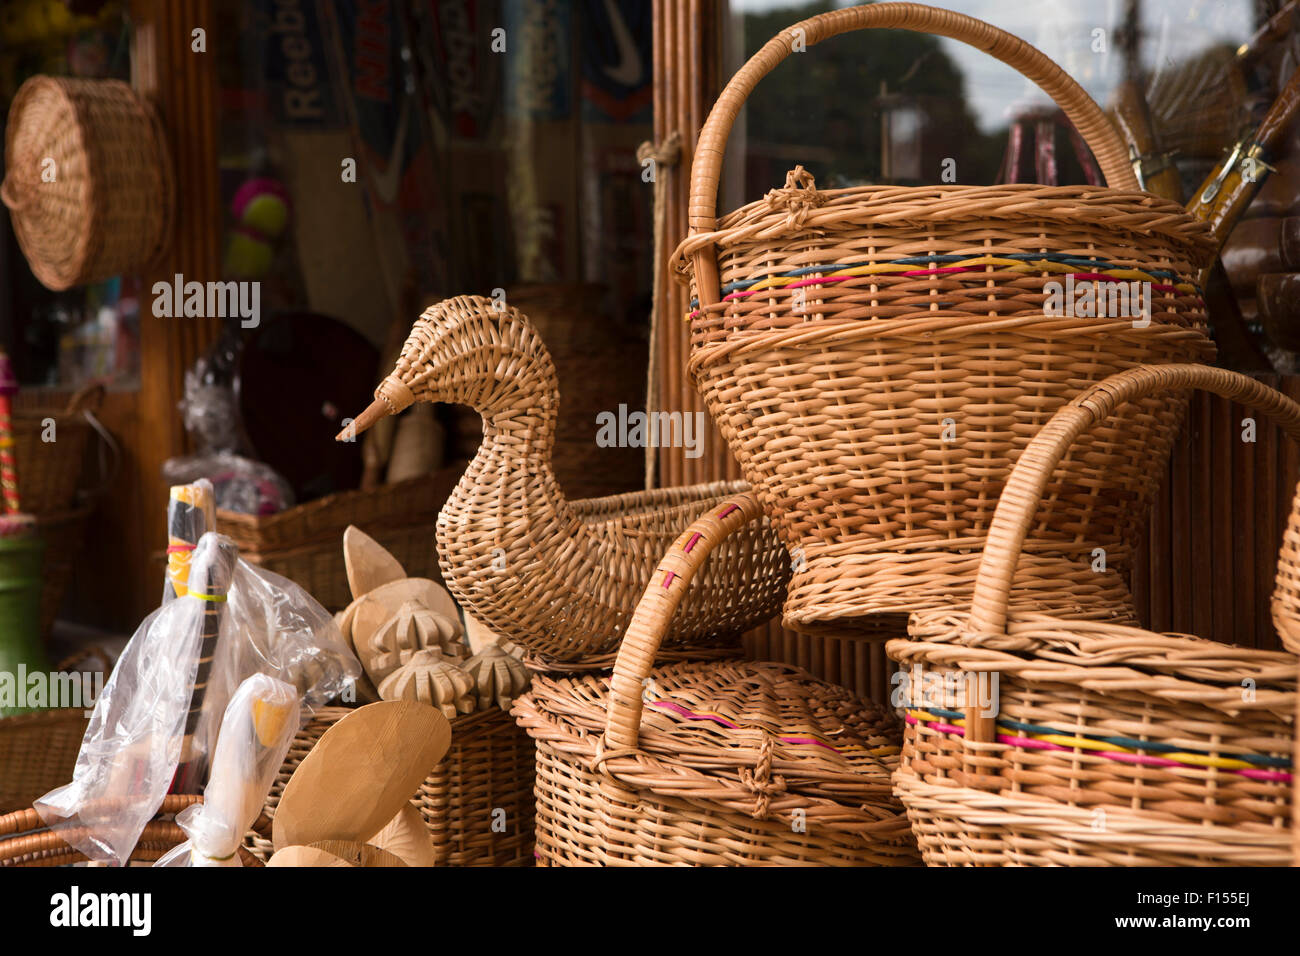 L'Inde, le Jammu-et-Cachemire, Srinagar, vieille ville, de l'artisanat, en forme de canard panier tissé sur l'affichage Banque D'Images